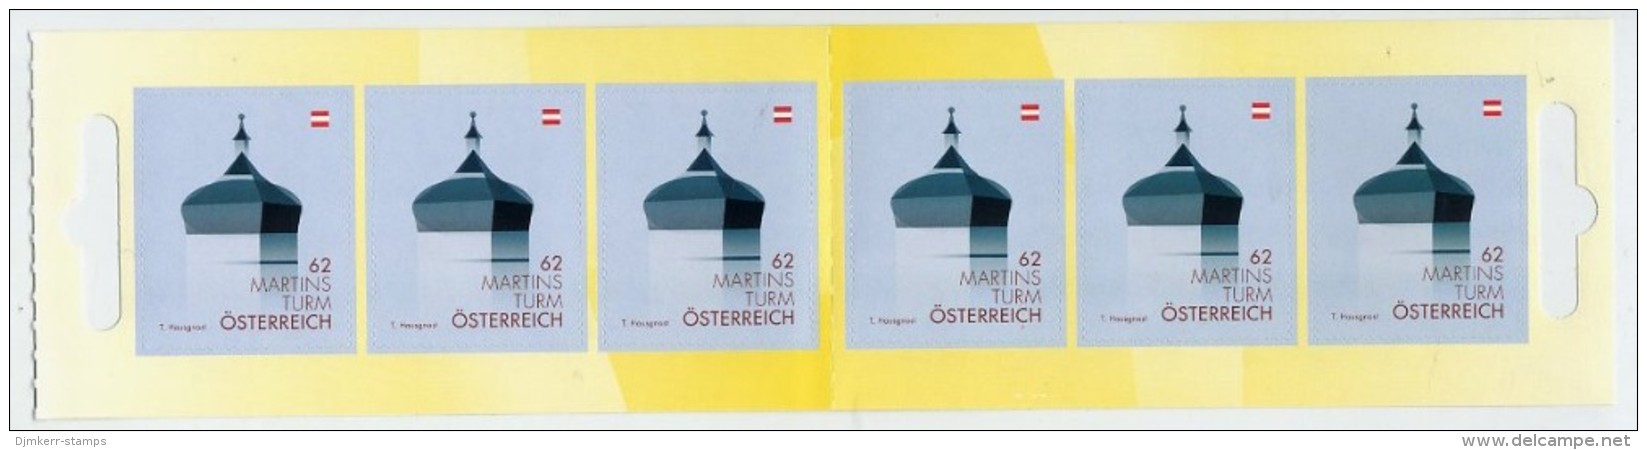 AUSTRIA 2013 Landmarks  Definitive 62 C. (Martinsturm) Retail Pack With 10 Stamps.  Michel MH 0-22 (3093) - Ungebraucht